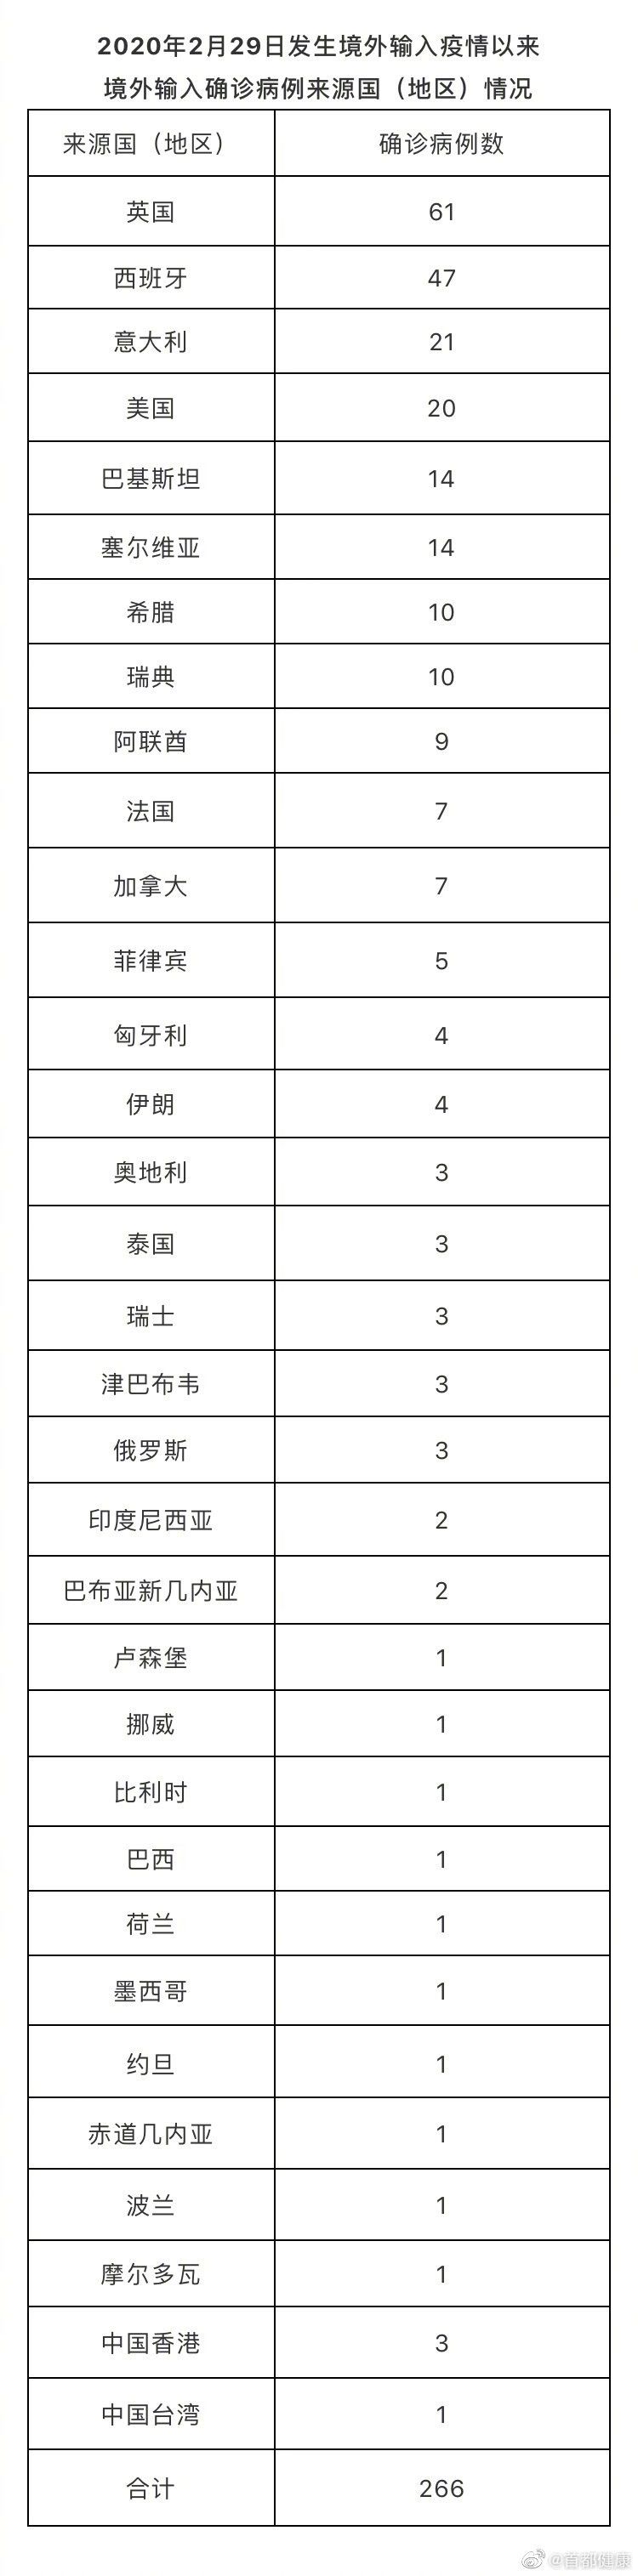 8月10日北京疫情最新数据消息 新增1例京外关联本地无症状转确诊